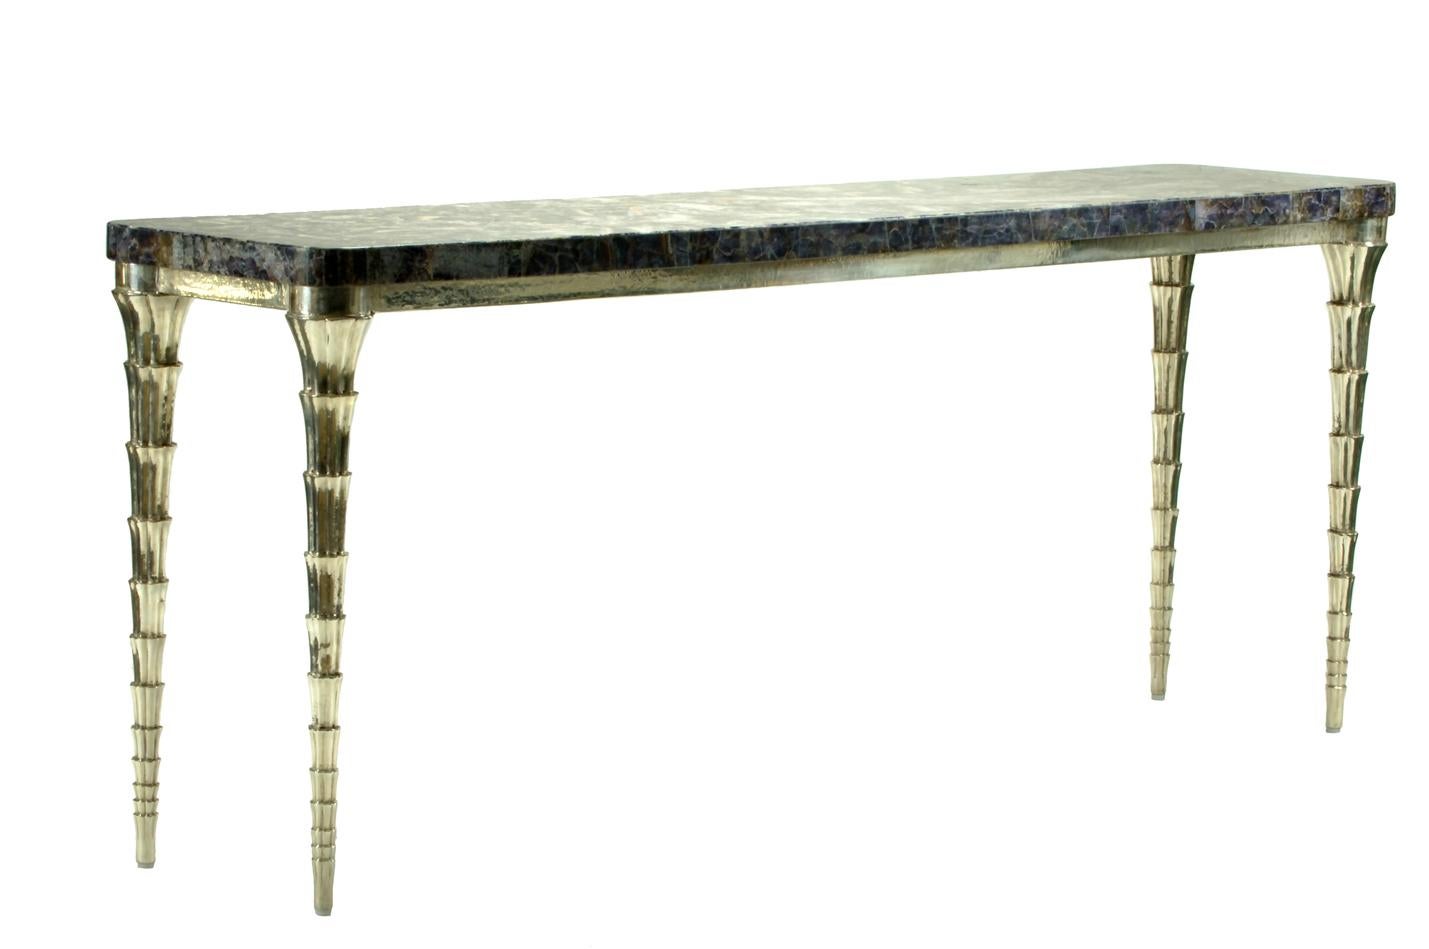 Cette table console longue et étroite a été conçue par Paul Mathieu pour Design/One Co. Ltd. des bijoux pour la collection domestique et a été baptisée 